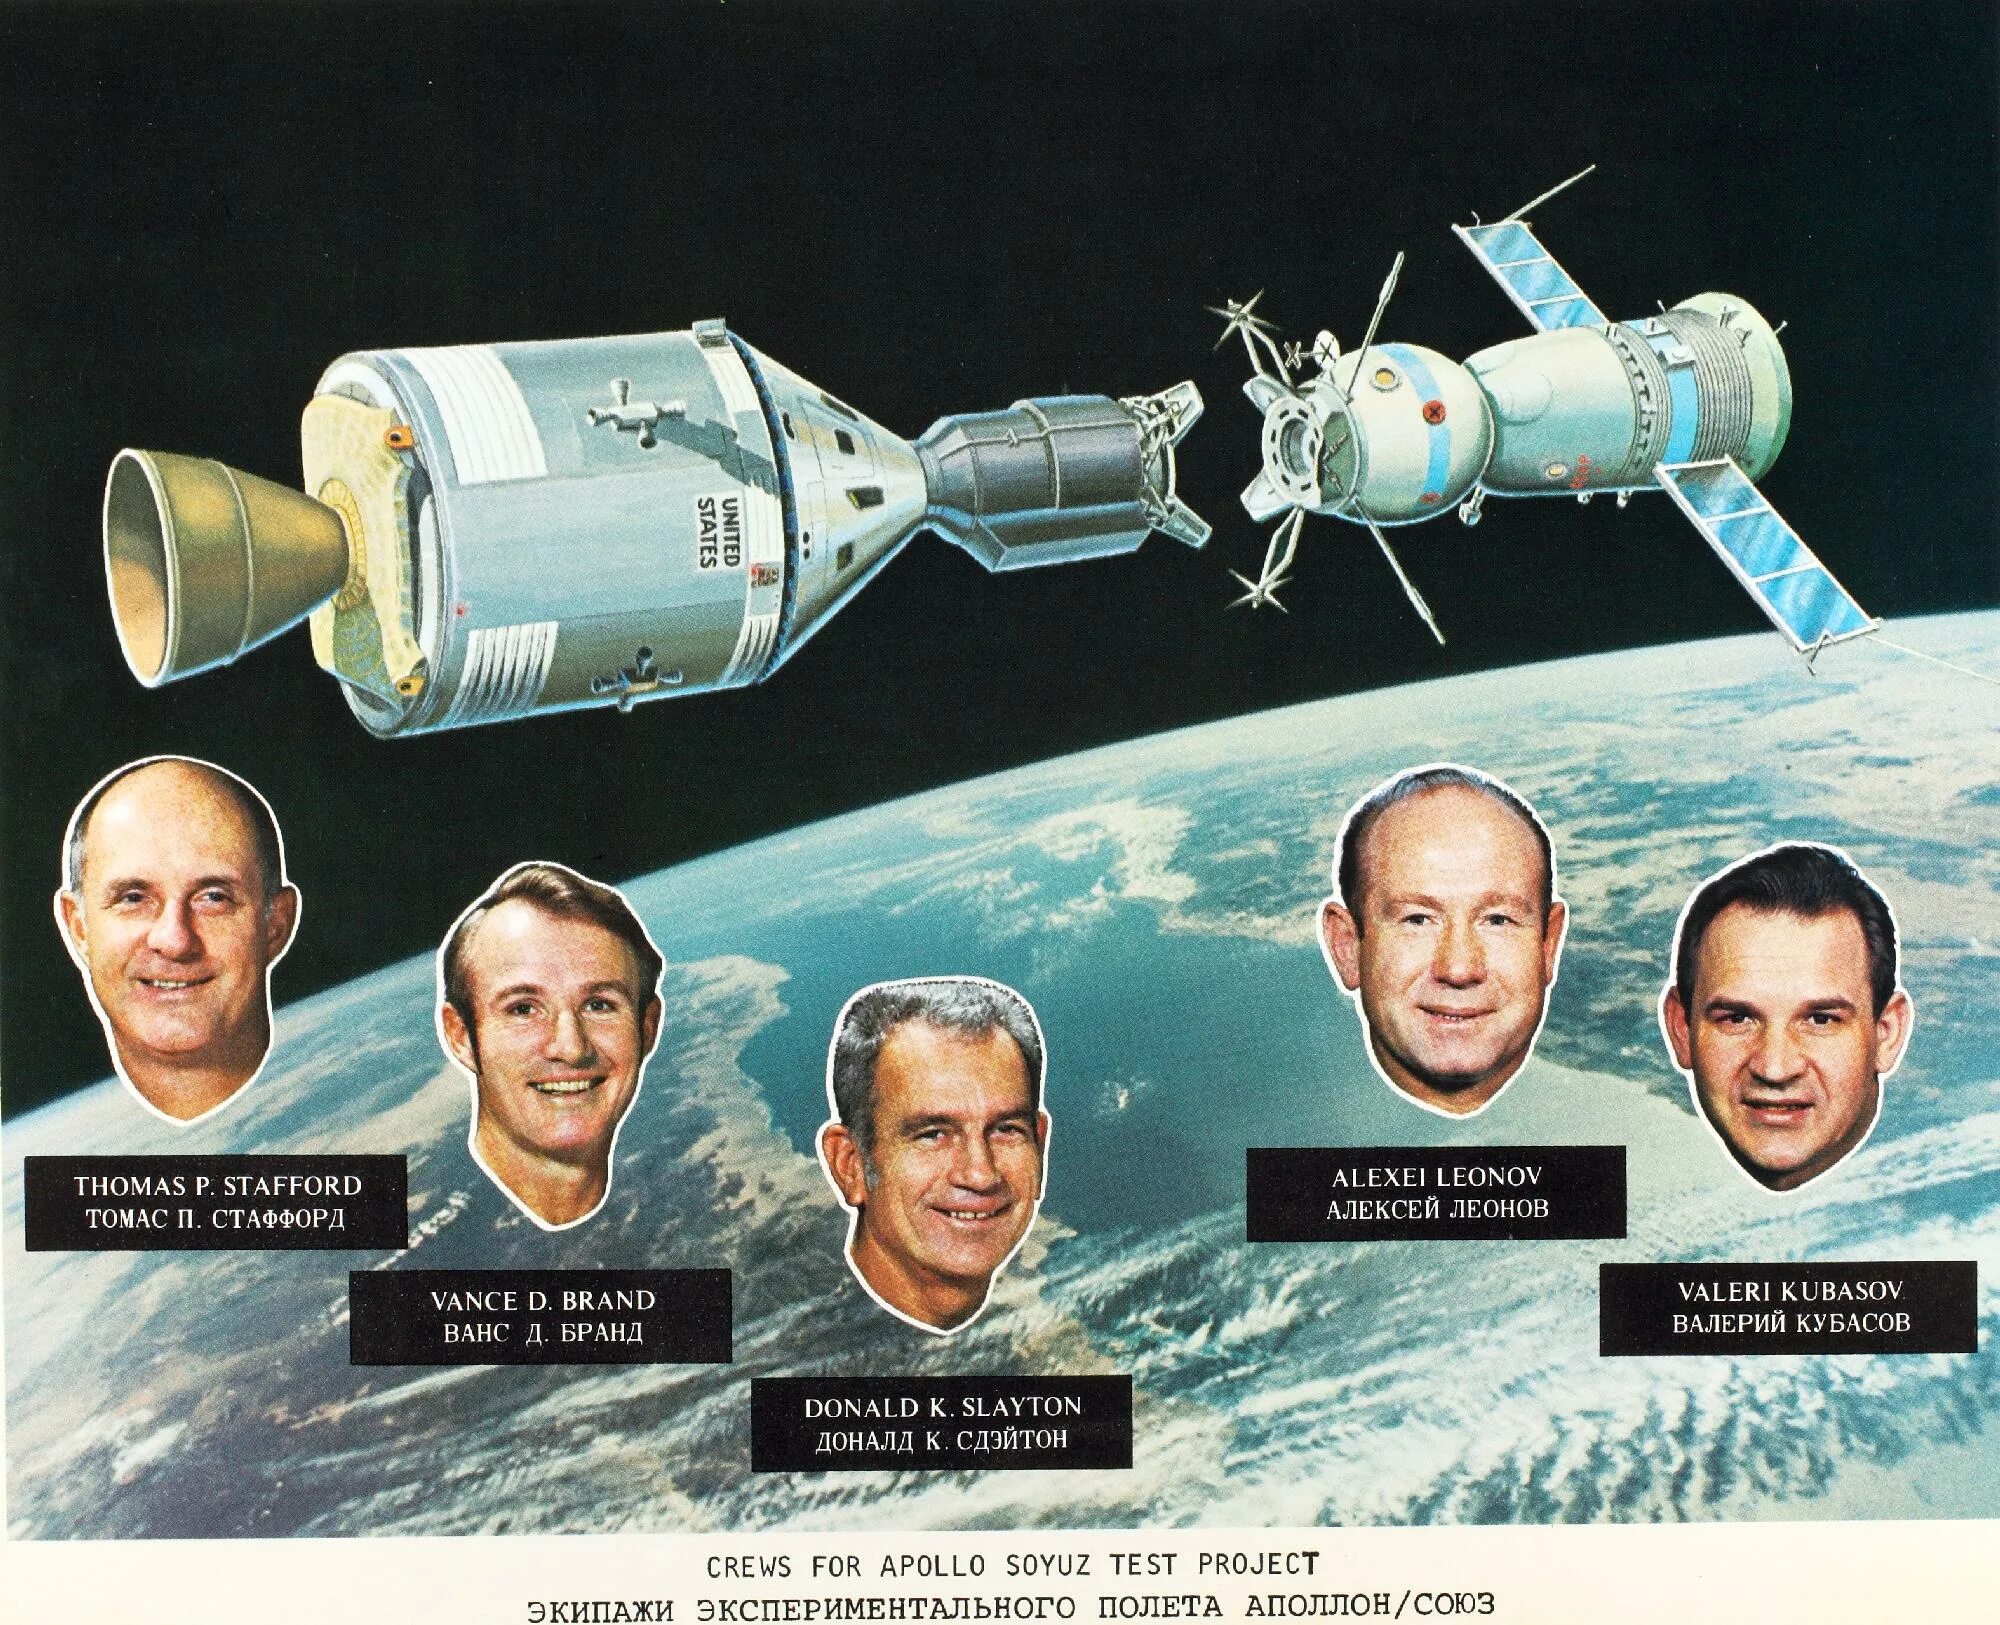 Первый пилотируемый космический полет год. Полет Союз-Аполлон 1975. Советский корабль «Союз-19» и американский корабль «Аполлон».. Советско-американский полет в космос по программе Союз Аполлон. 1975 Стыковка кораблей Союз и Аполлон.